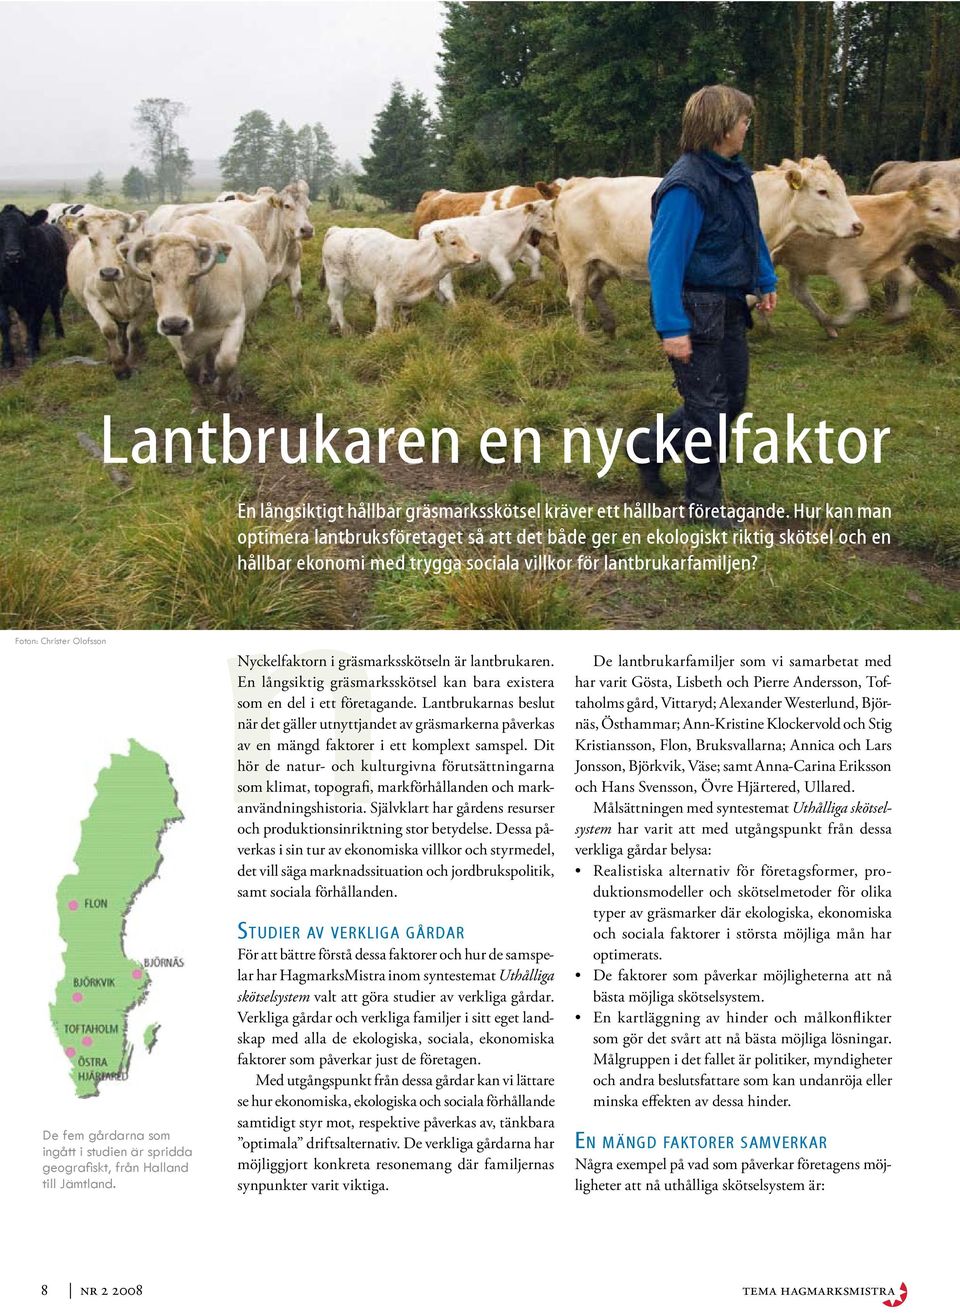 Foton: Christer Olofsson De fem gårdarna som ingått i studien är spridda geografiskt, från Halland till Jämtland. nnyckelfaktorn i gräsmarksskötseln är lantbrukaren.